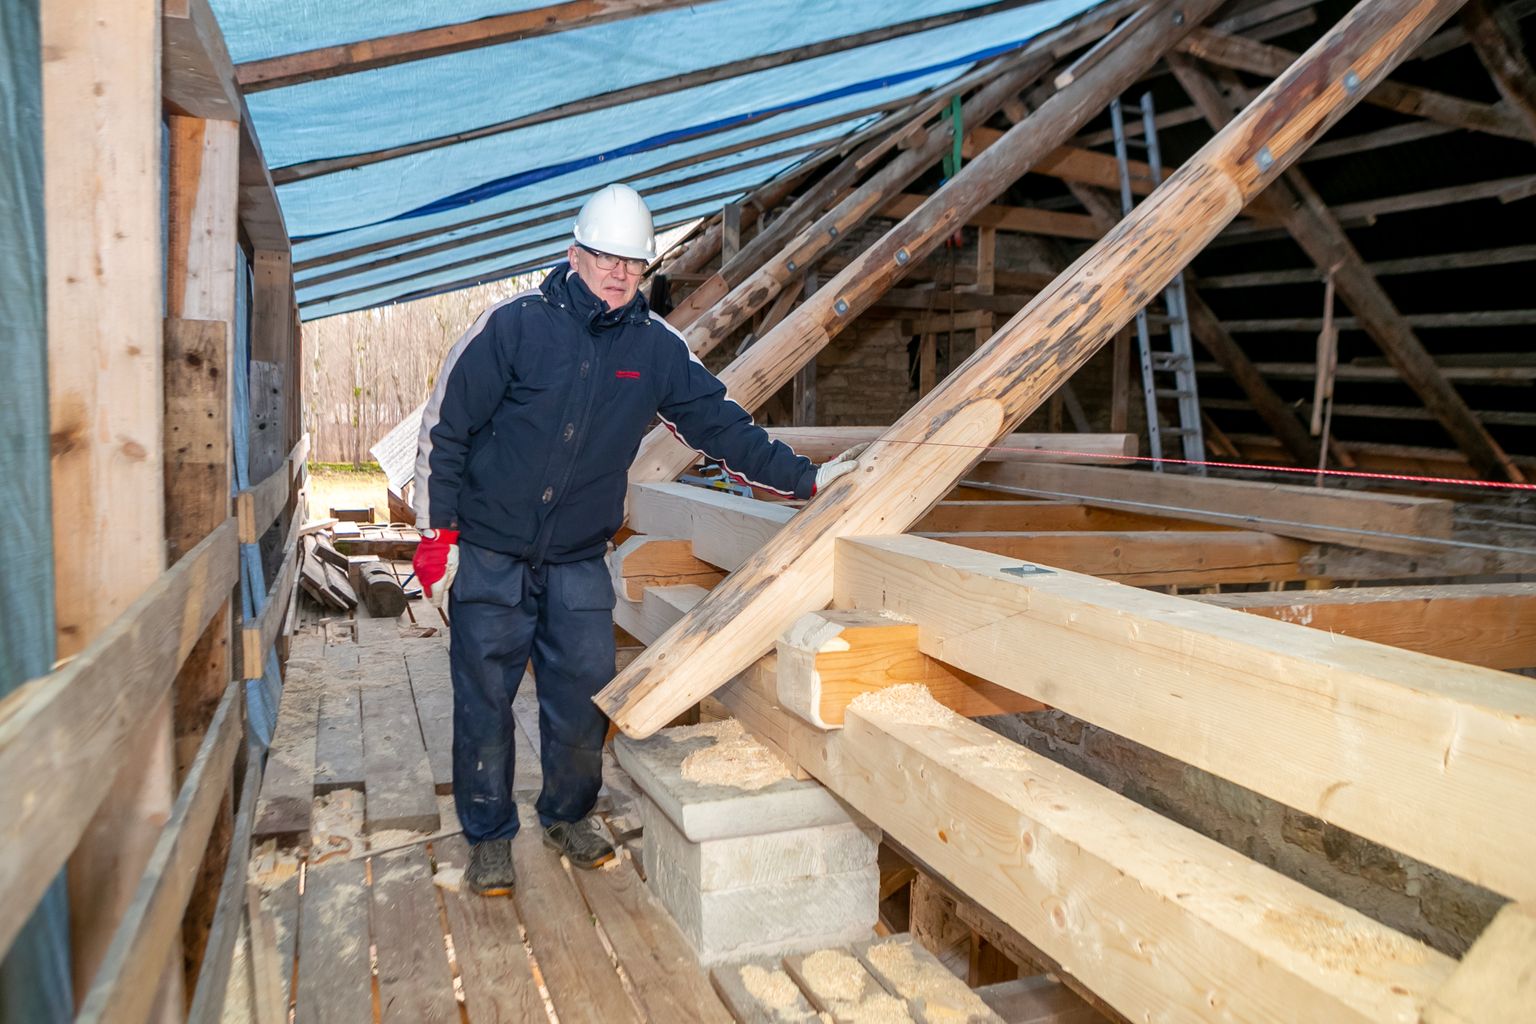 ALATI VÕIB TULLA ÜLLATUSI: Eile käis Ain Pihl vaatamas, kuidas Rändmeistri töömeestel edeneb Kaarma pastoraadi aidamaja katuse parandamine.